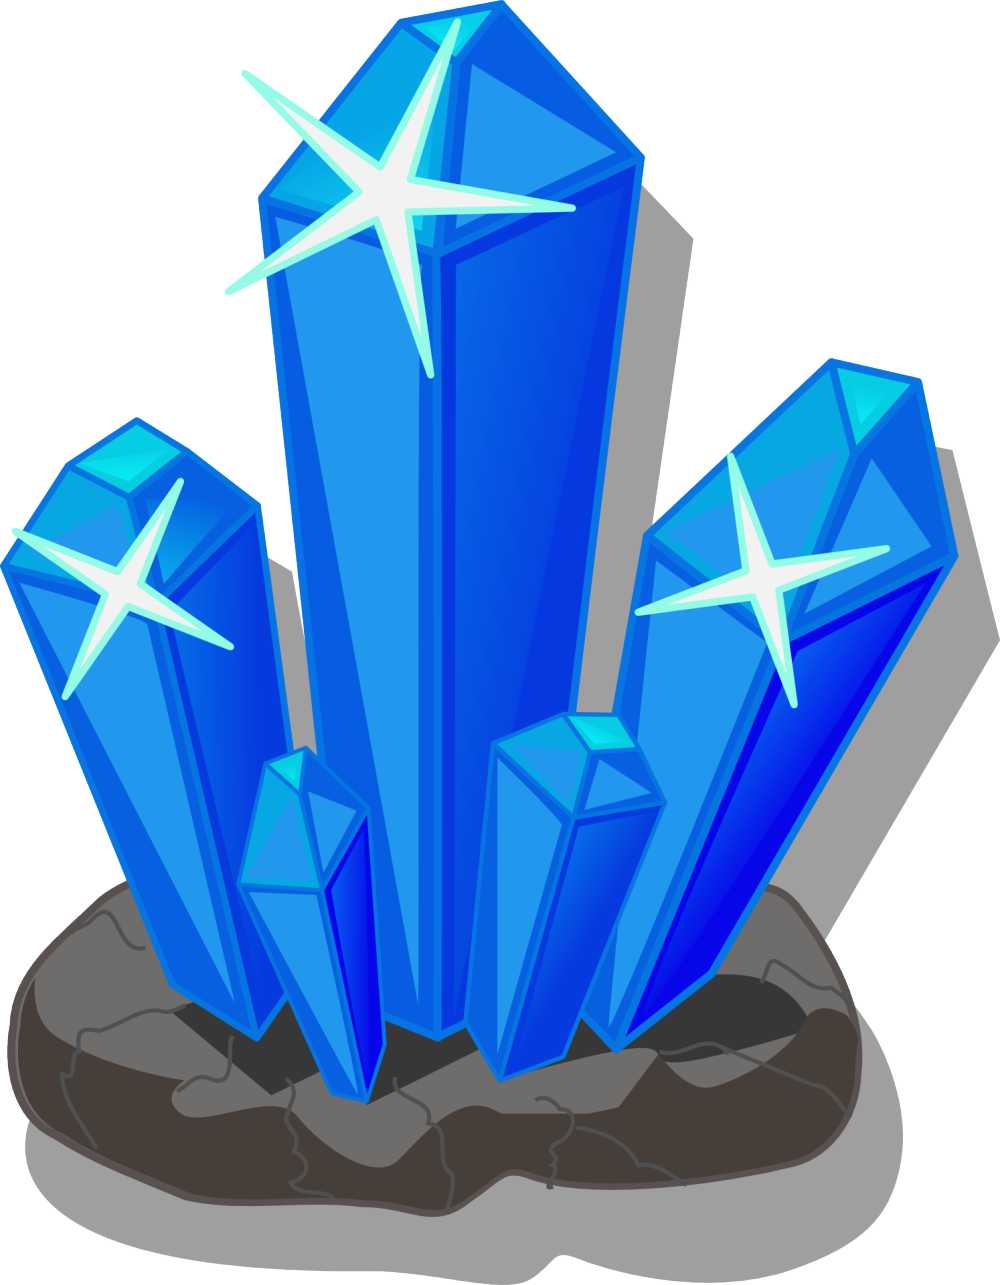 晶体矿物盐冰山水晶石英无色水晶山水晶宝石钻石蓝色有光泽